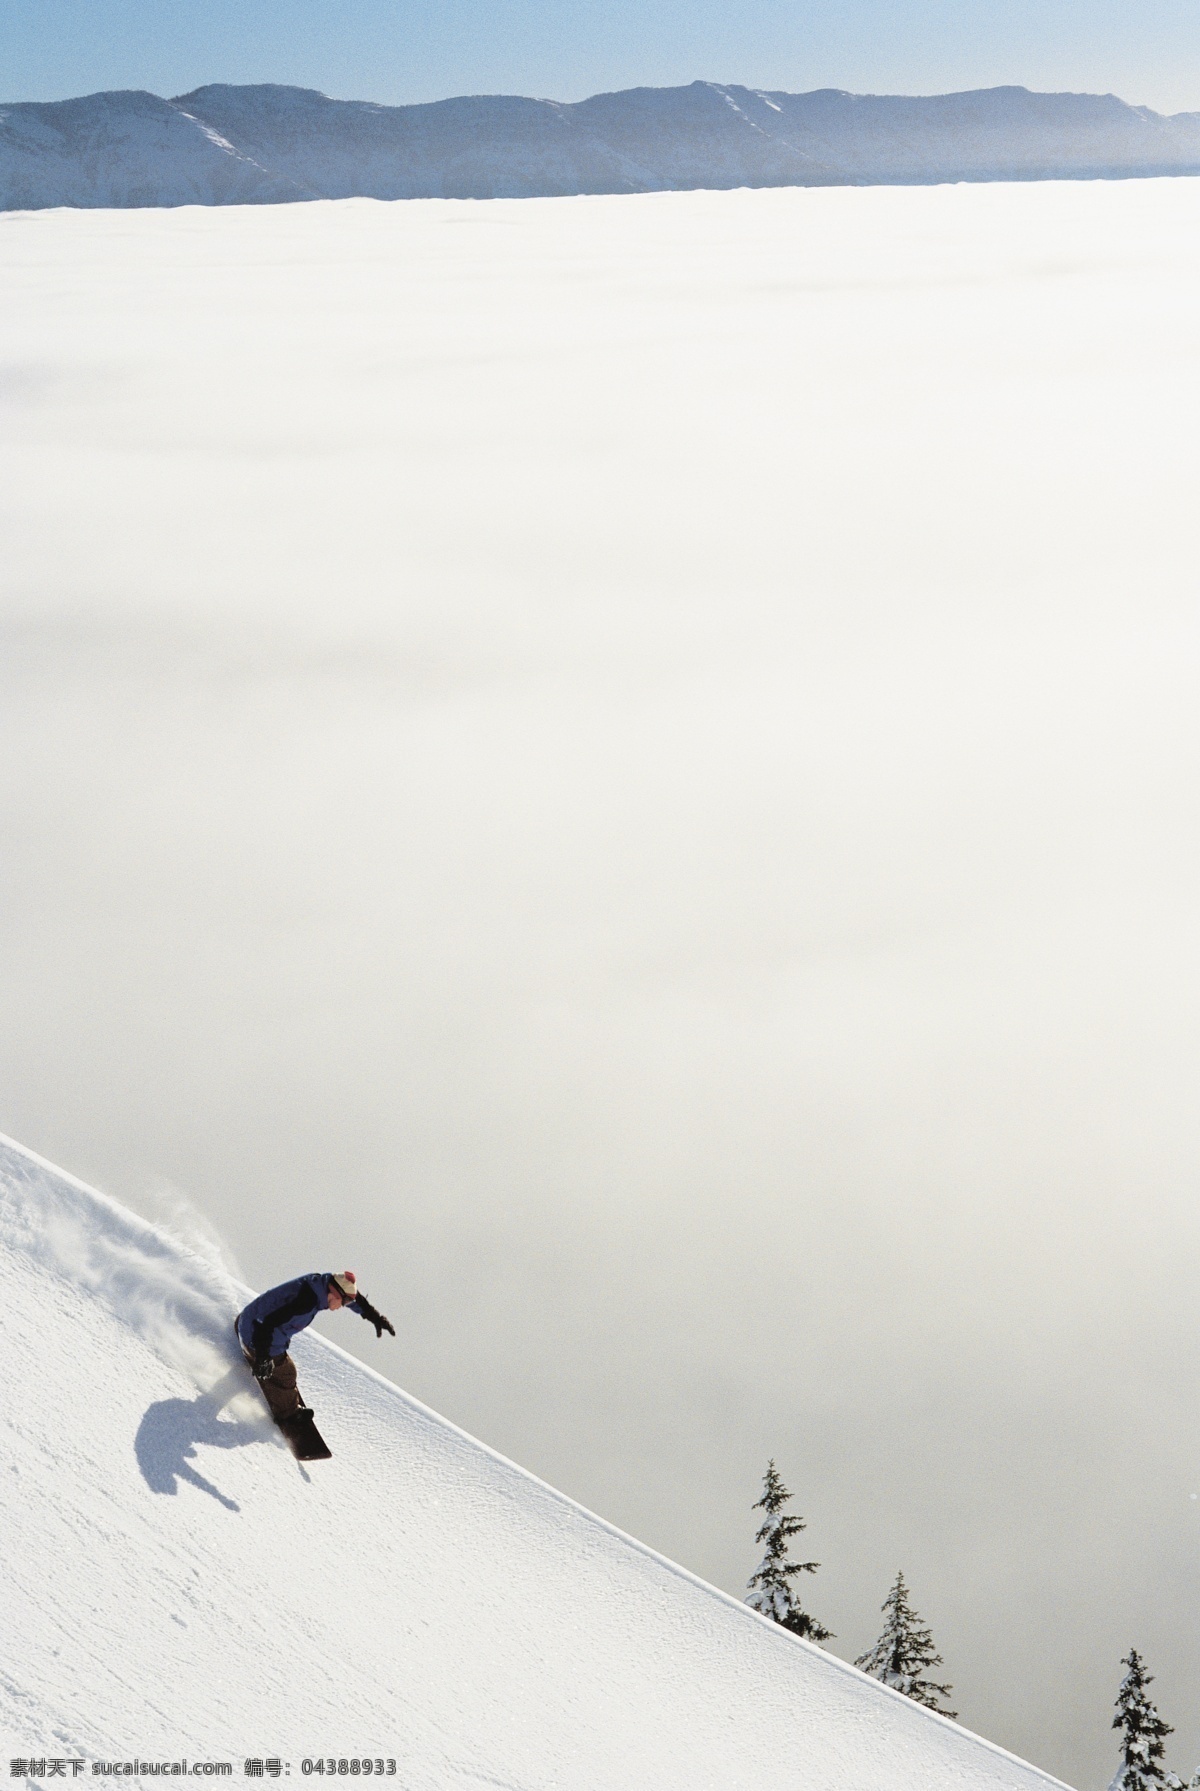 高山 下滑 滑雪 运动员 雪地运动 划雪运动 极限运动 体育项目 速度 运动图片 生活百科 雪山 风景 摄影图片 高清图片 滑雪图片